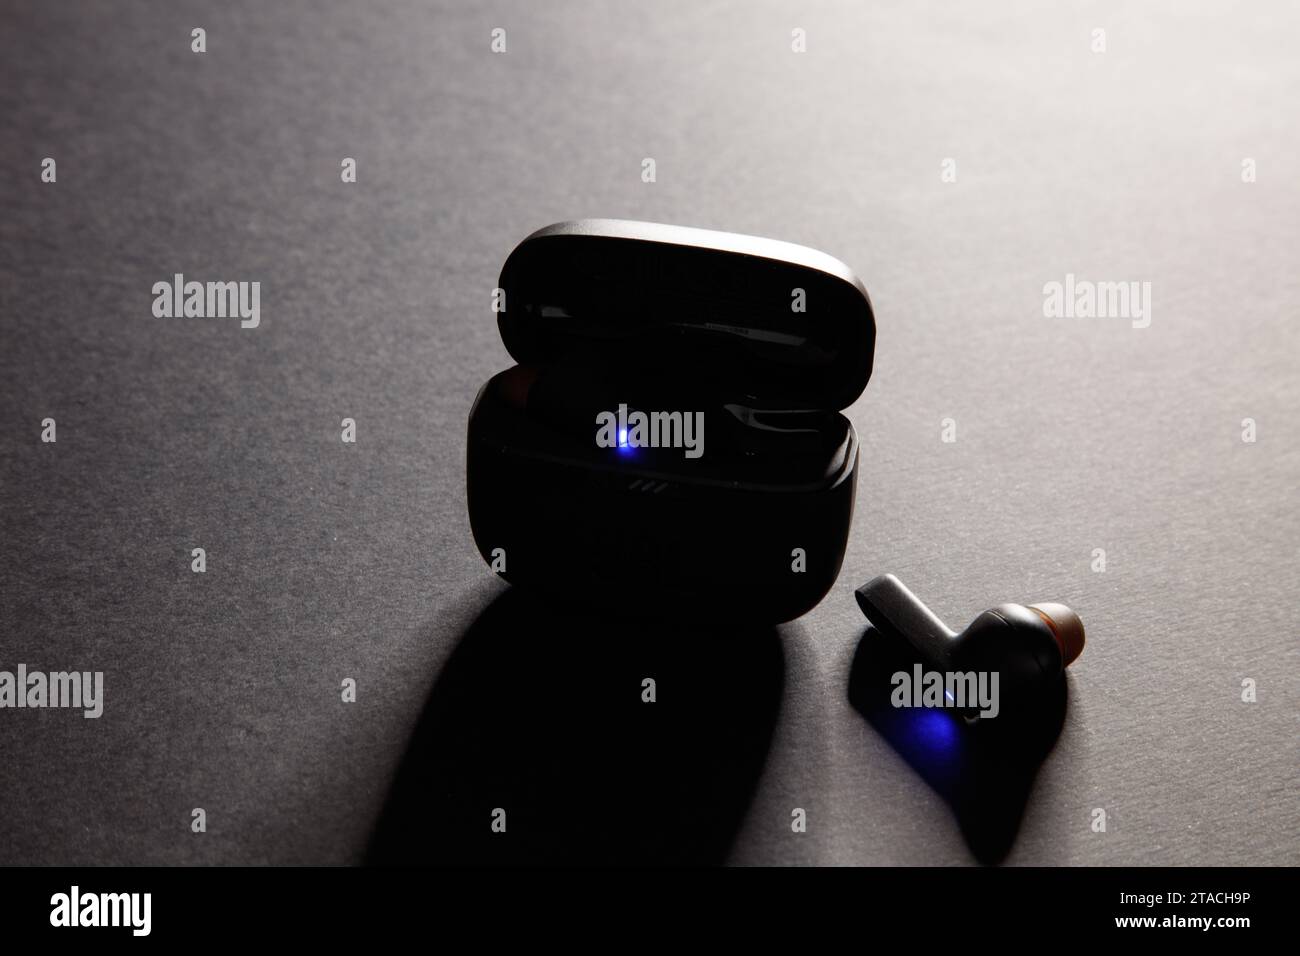 una ripresa in studio di un paio di auricolari bluetooth wireless jbl neri, su uno sfondo nero incredibilmente illuminato Foto Stock